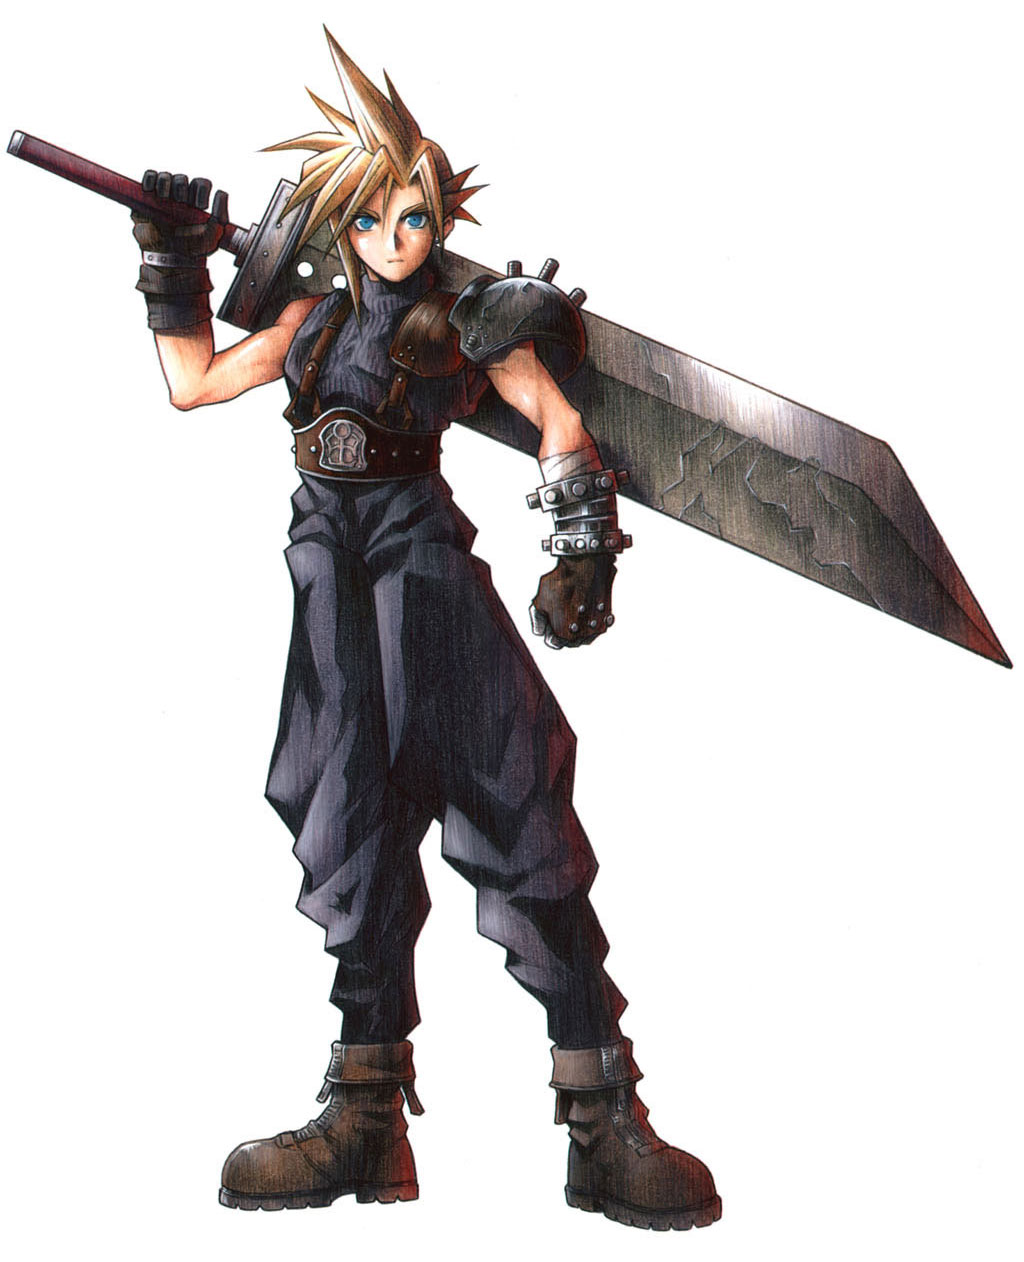 Cloud Strife: Sẵn sàng chiến đấu với những thế lực đen tối trong Final Fantasy VII? Hãy xem hình ảnh về Cloud Strife trong bộ giáp phong cách và cây gươm đầy uy lực này và tìm hiểu thêm về câu chuyện của anh ta.